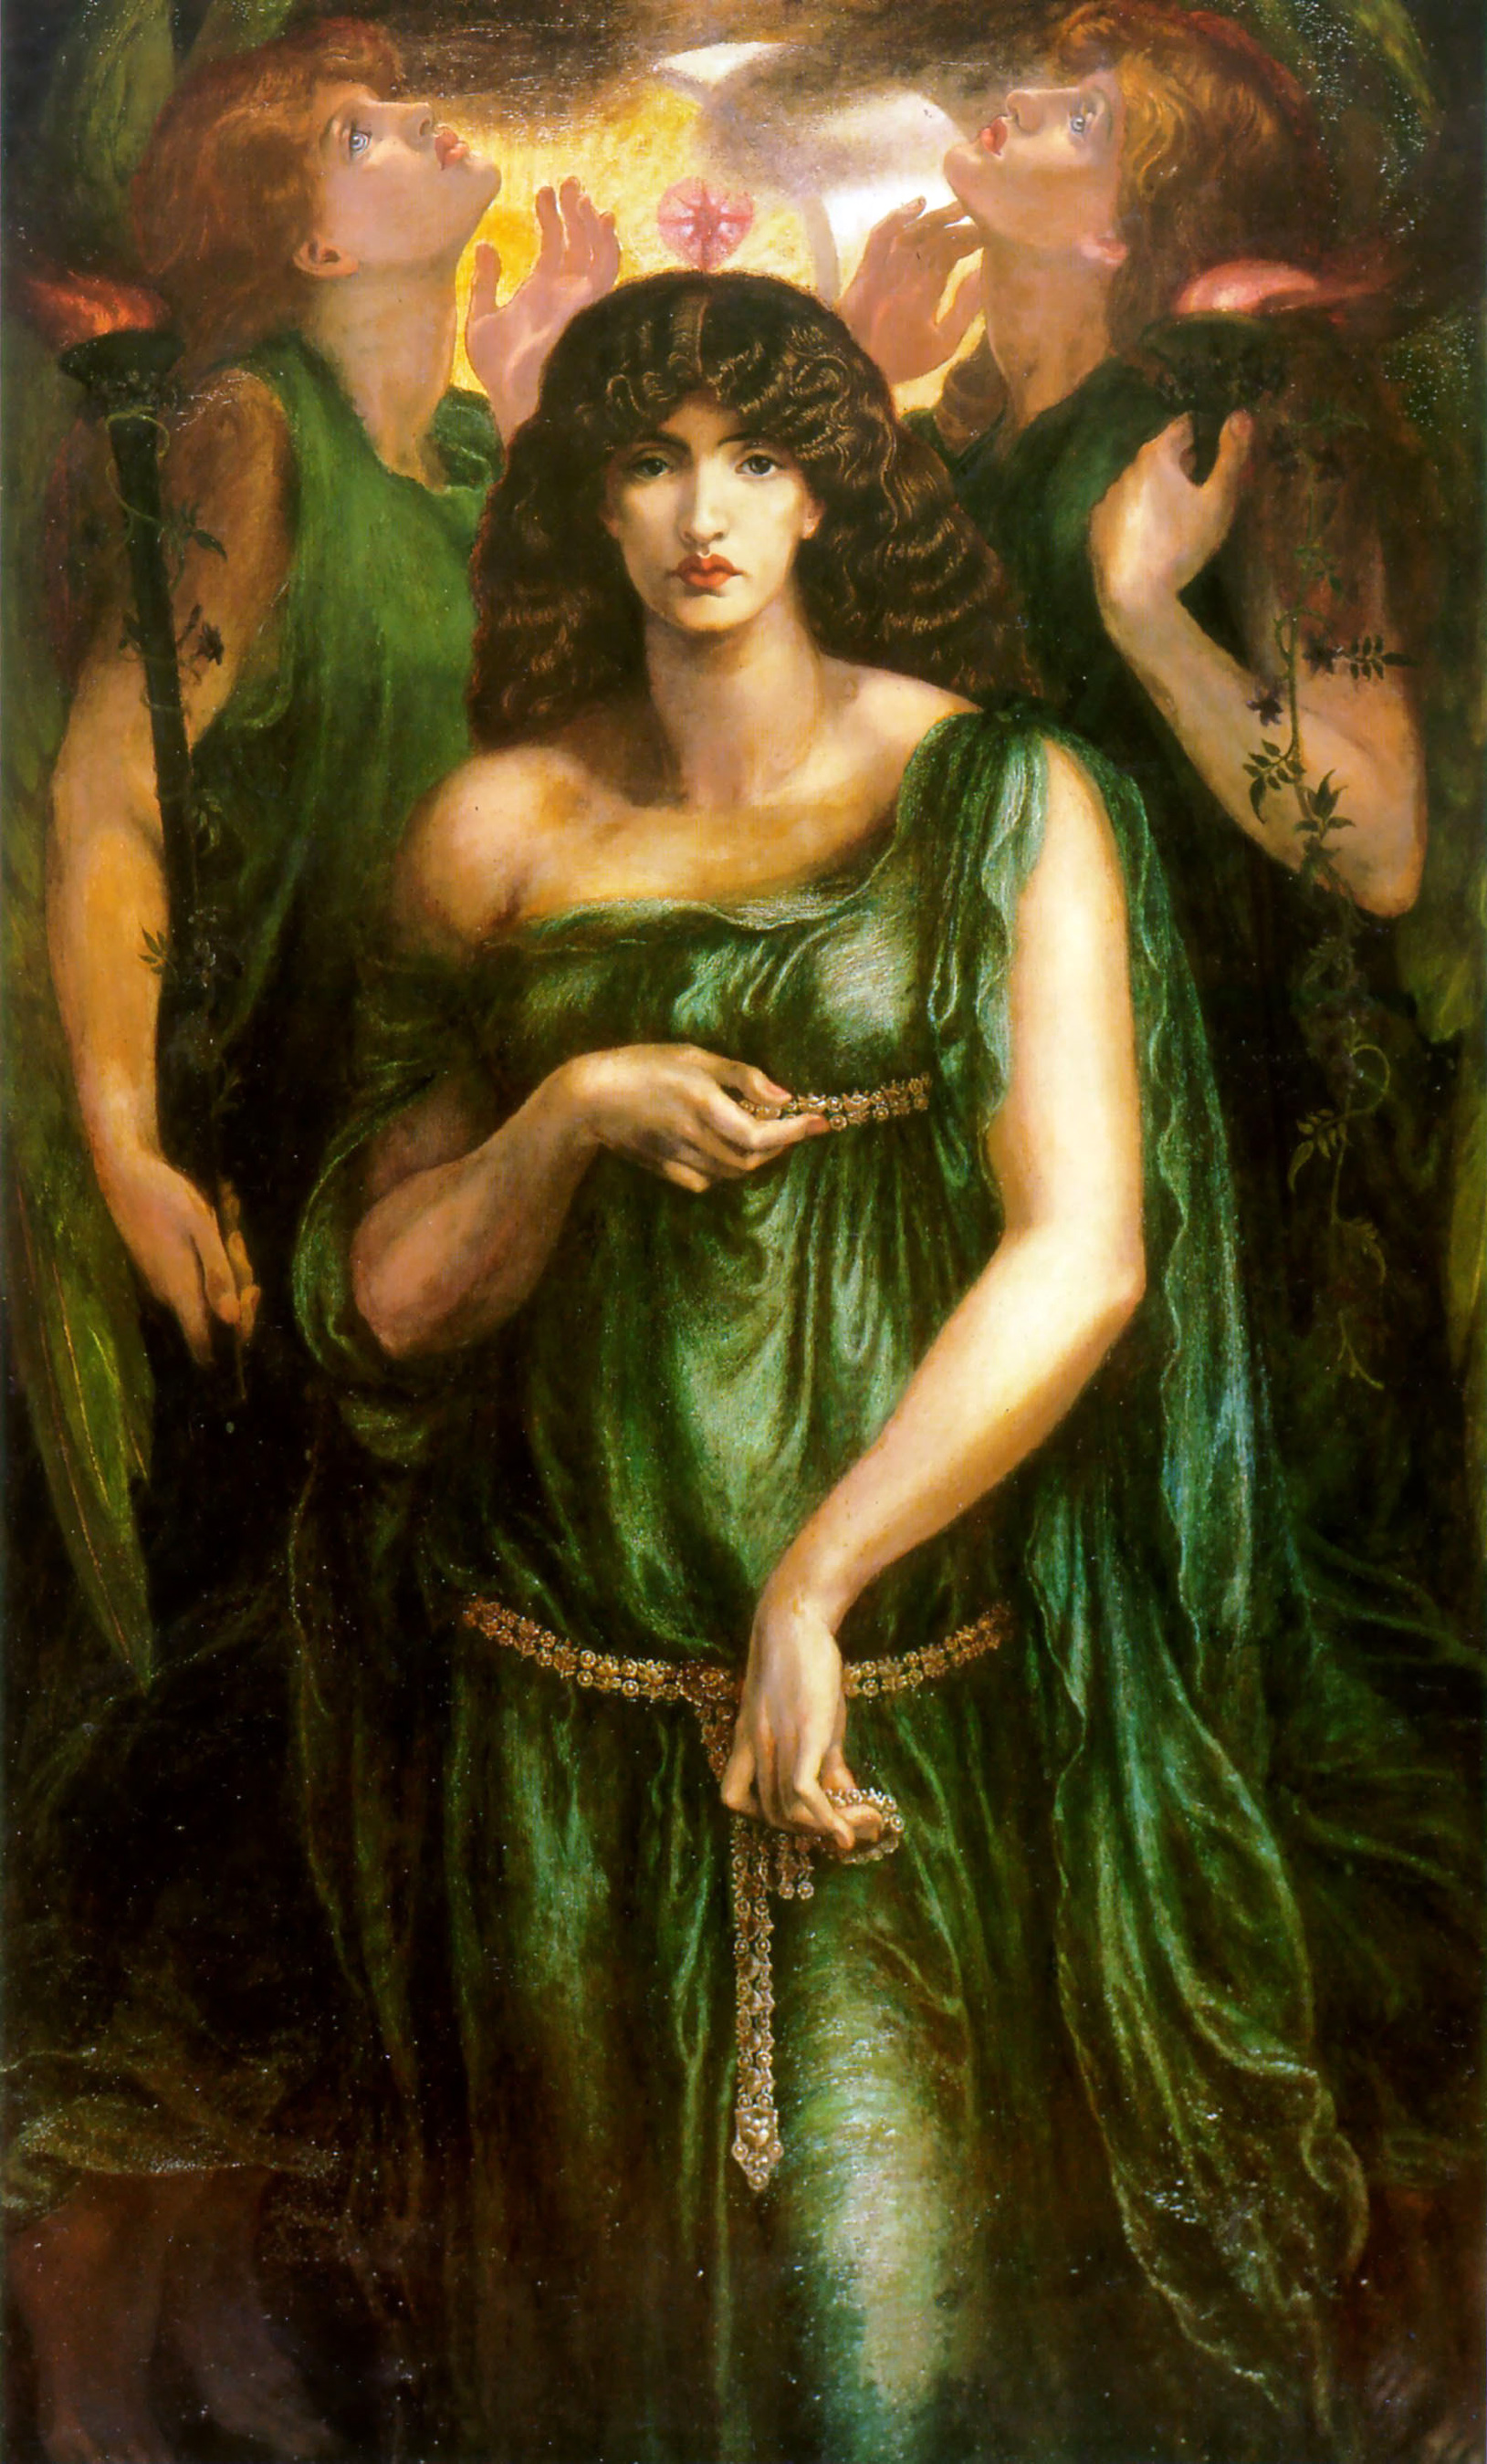 《亚斯塔蒂》 by 但丁 罗塞蒂 - 1877 - 185 x 109 cm 曼彻斯特艺术馆